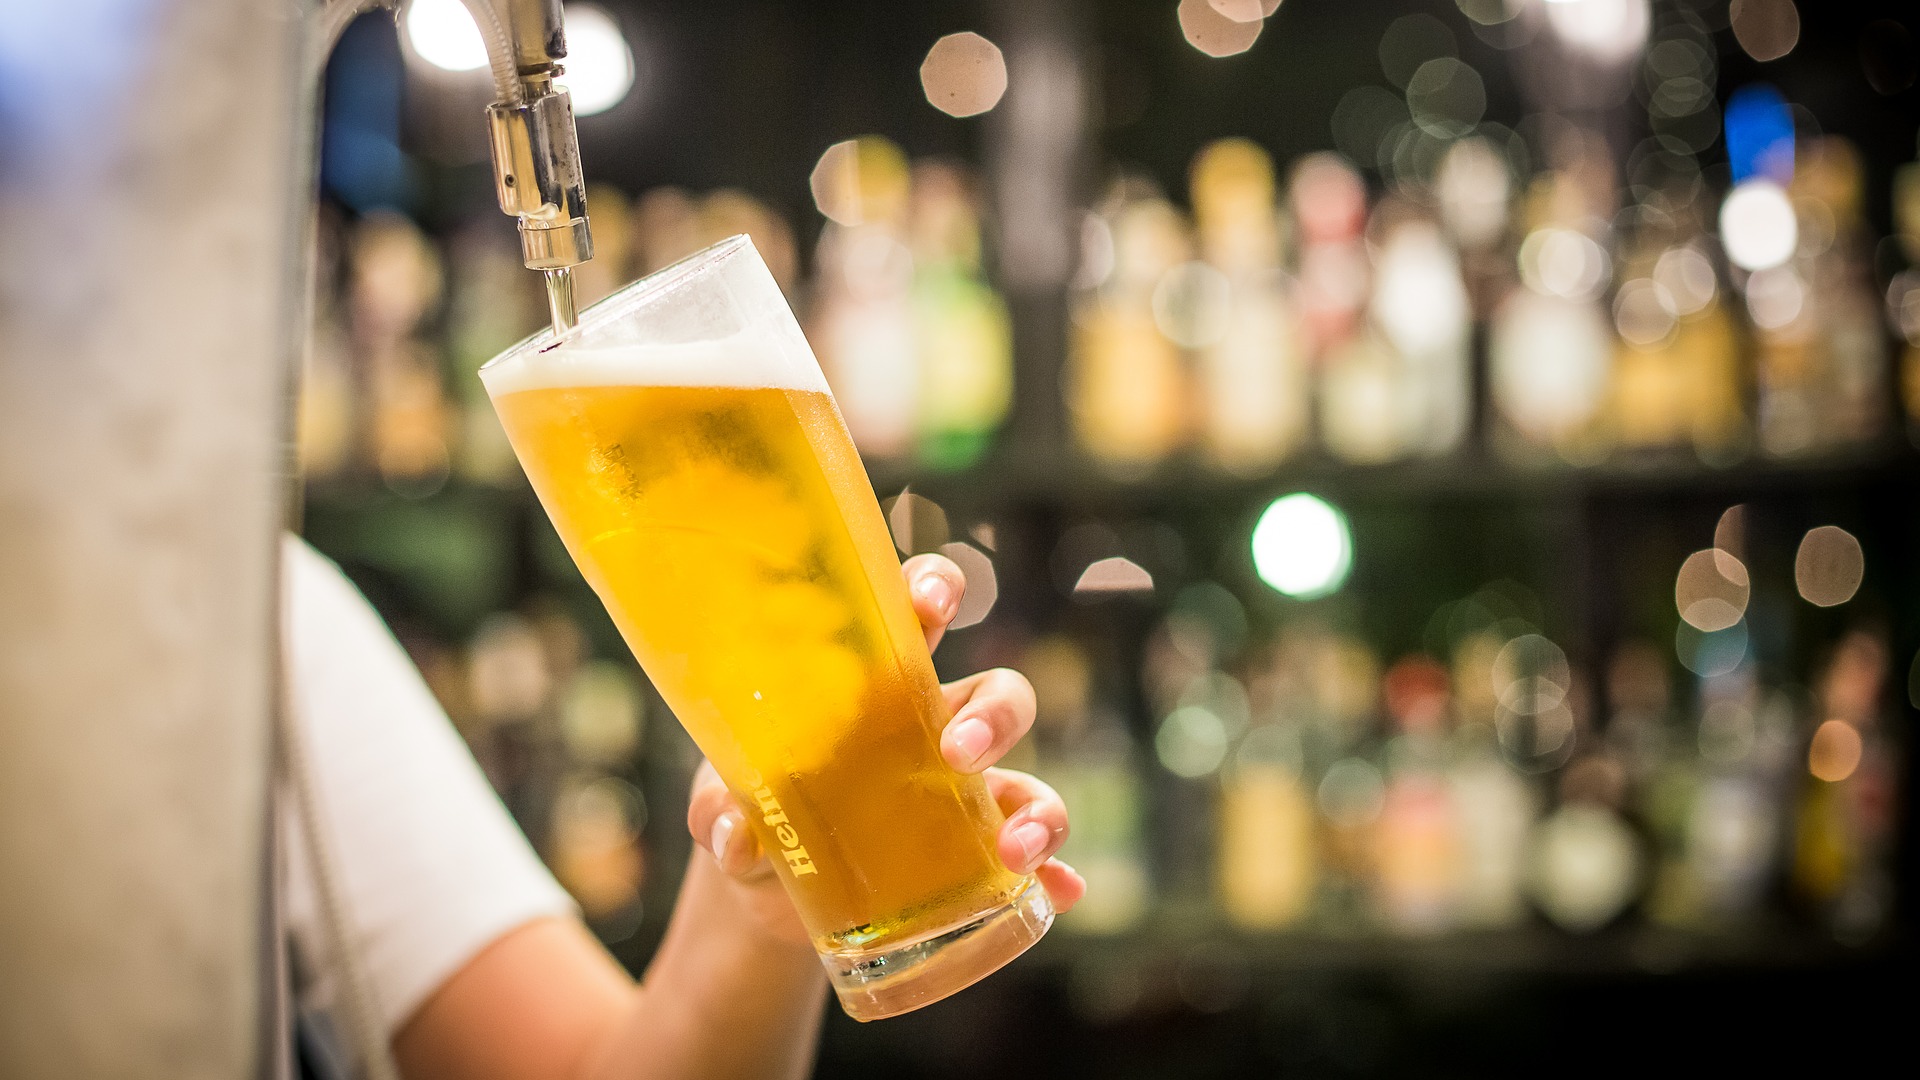 Cerveza, la bebida más consumida en Madrid